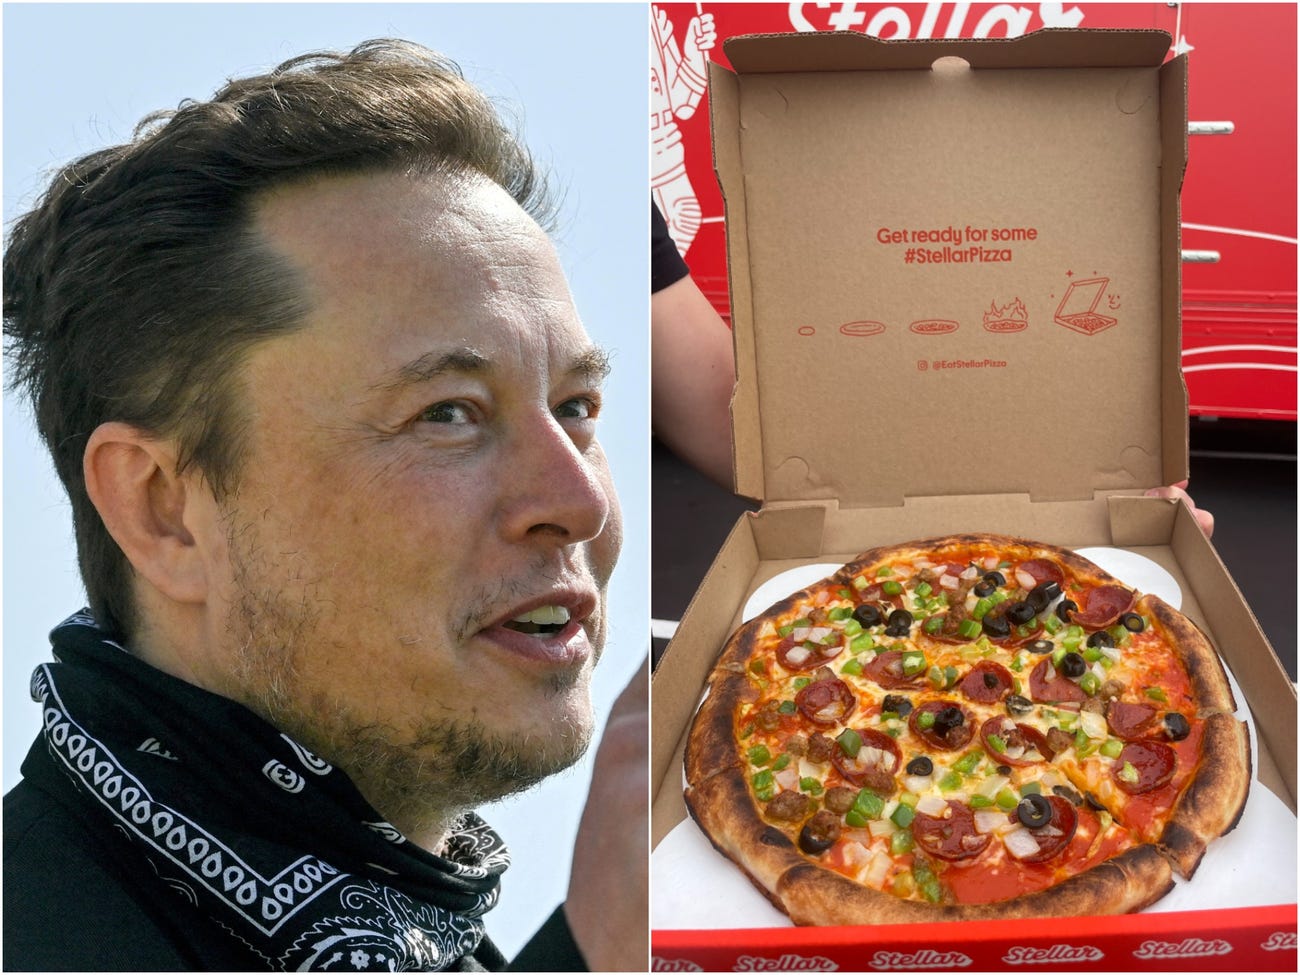 Elon Musk'ın SpaceX'inden ayrıldılar bu işe girdiler: 45 saniyede pizza